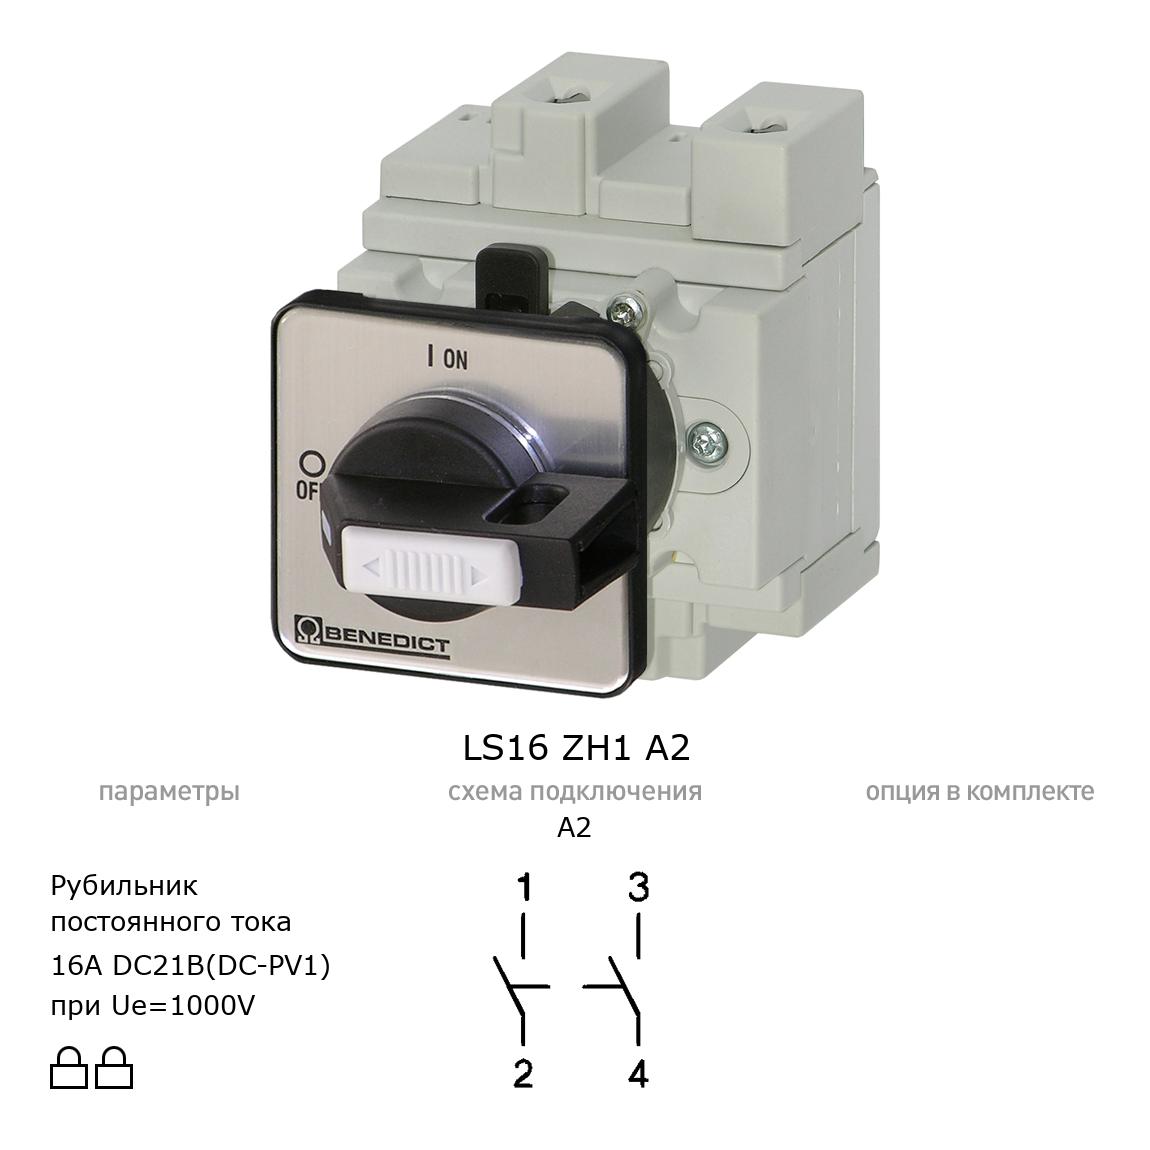 Выключатель нагрузки / рубильник для постоянного тока (DC) LS16 ZH1 A2 BENEDICT